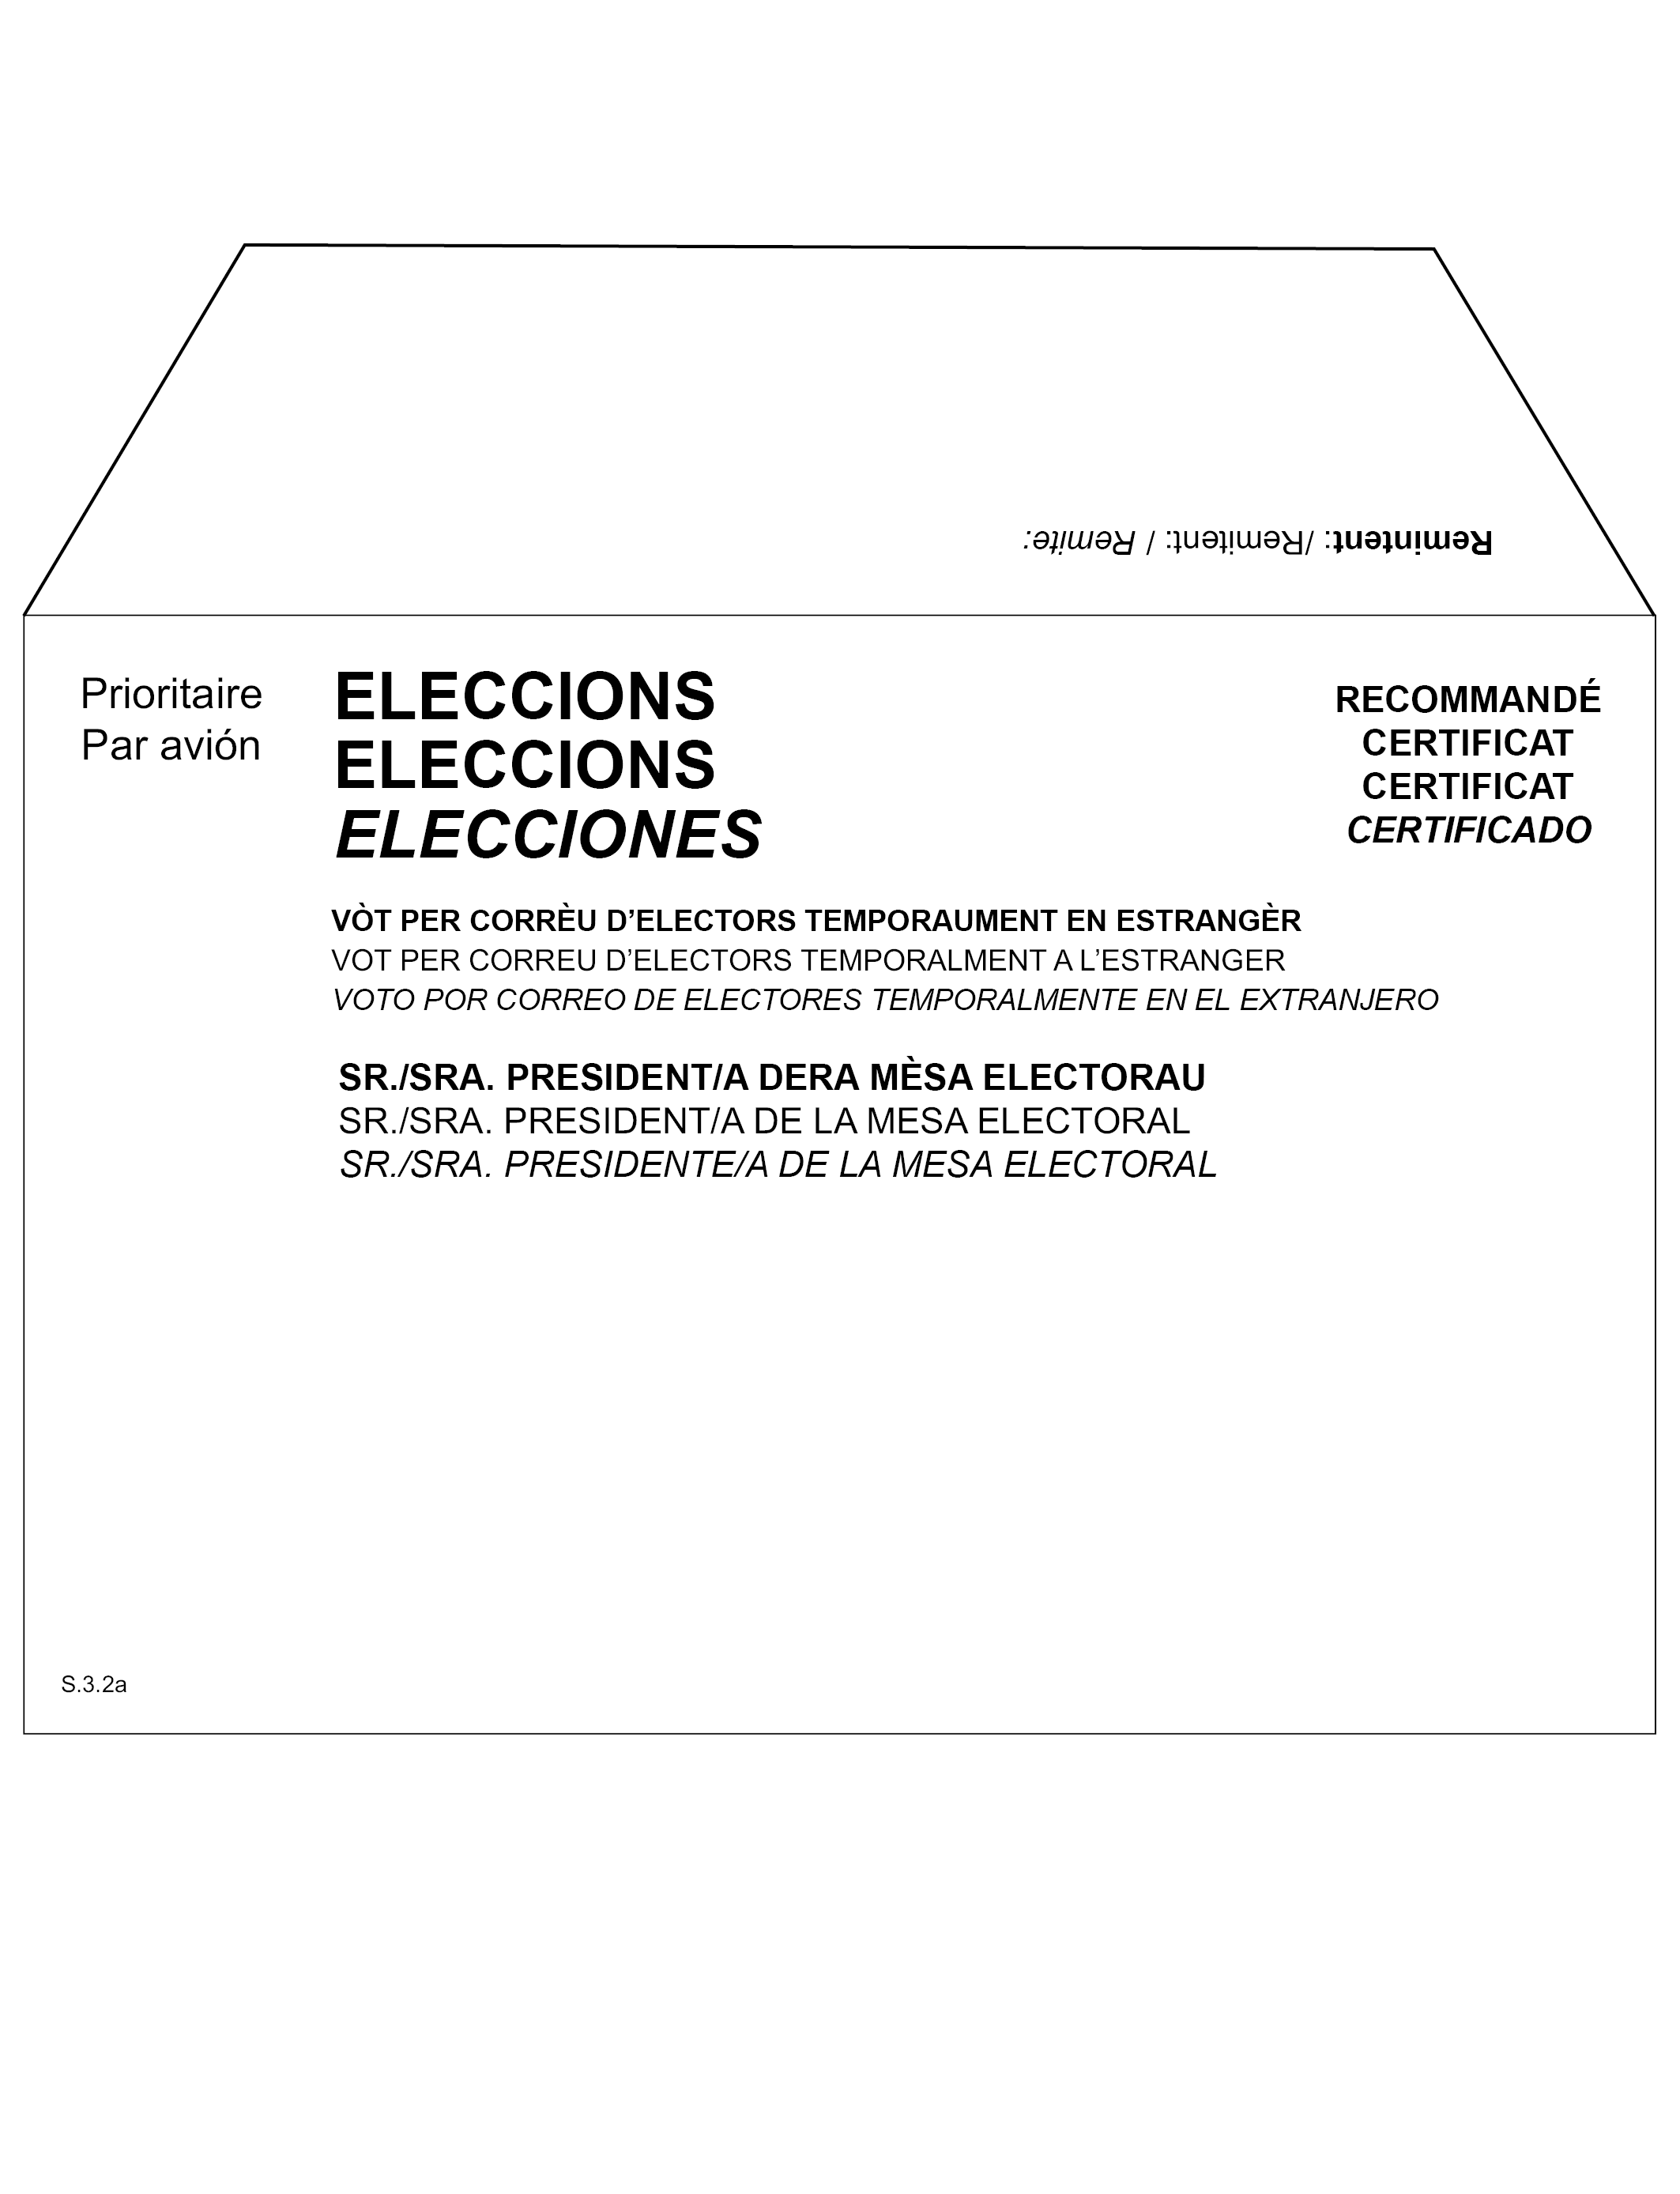 BOE.es - BOE-A-2017-12613 Real Decreto 953/2017, de 31 de octubre, por el  que se dictan normas complementarias para la realización de las elecciones  al Parlamento de Cataluña 2017.